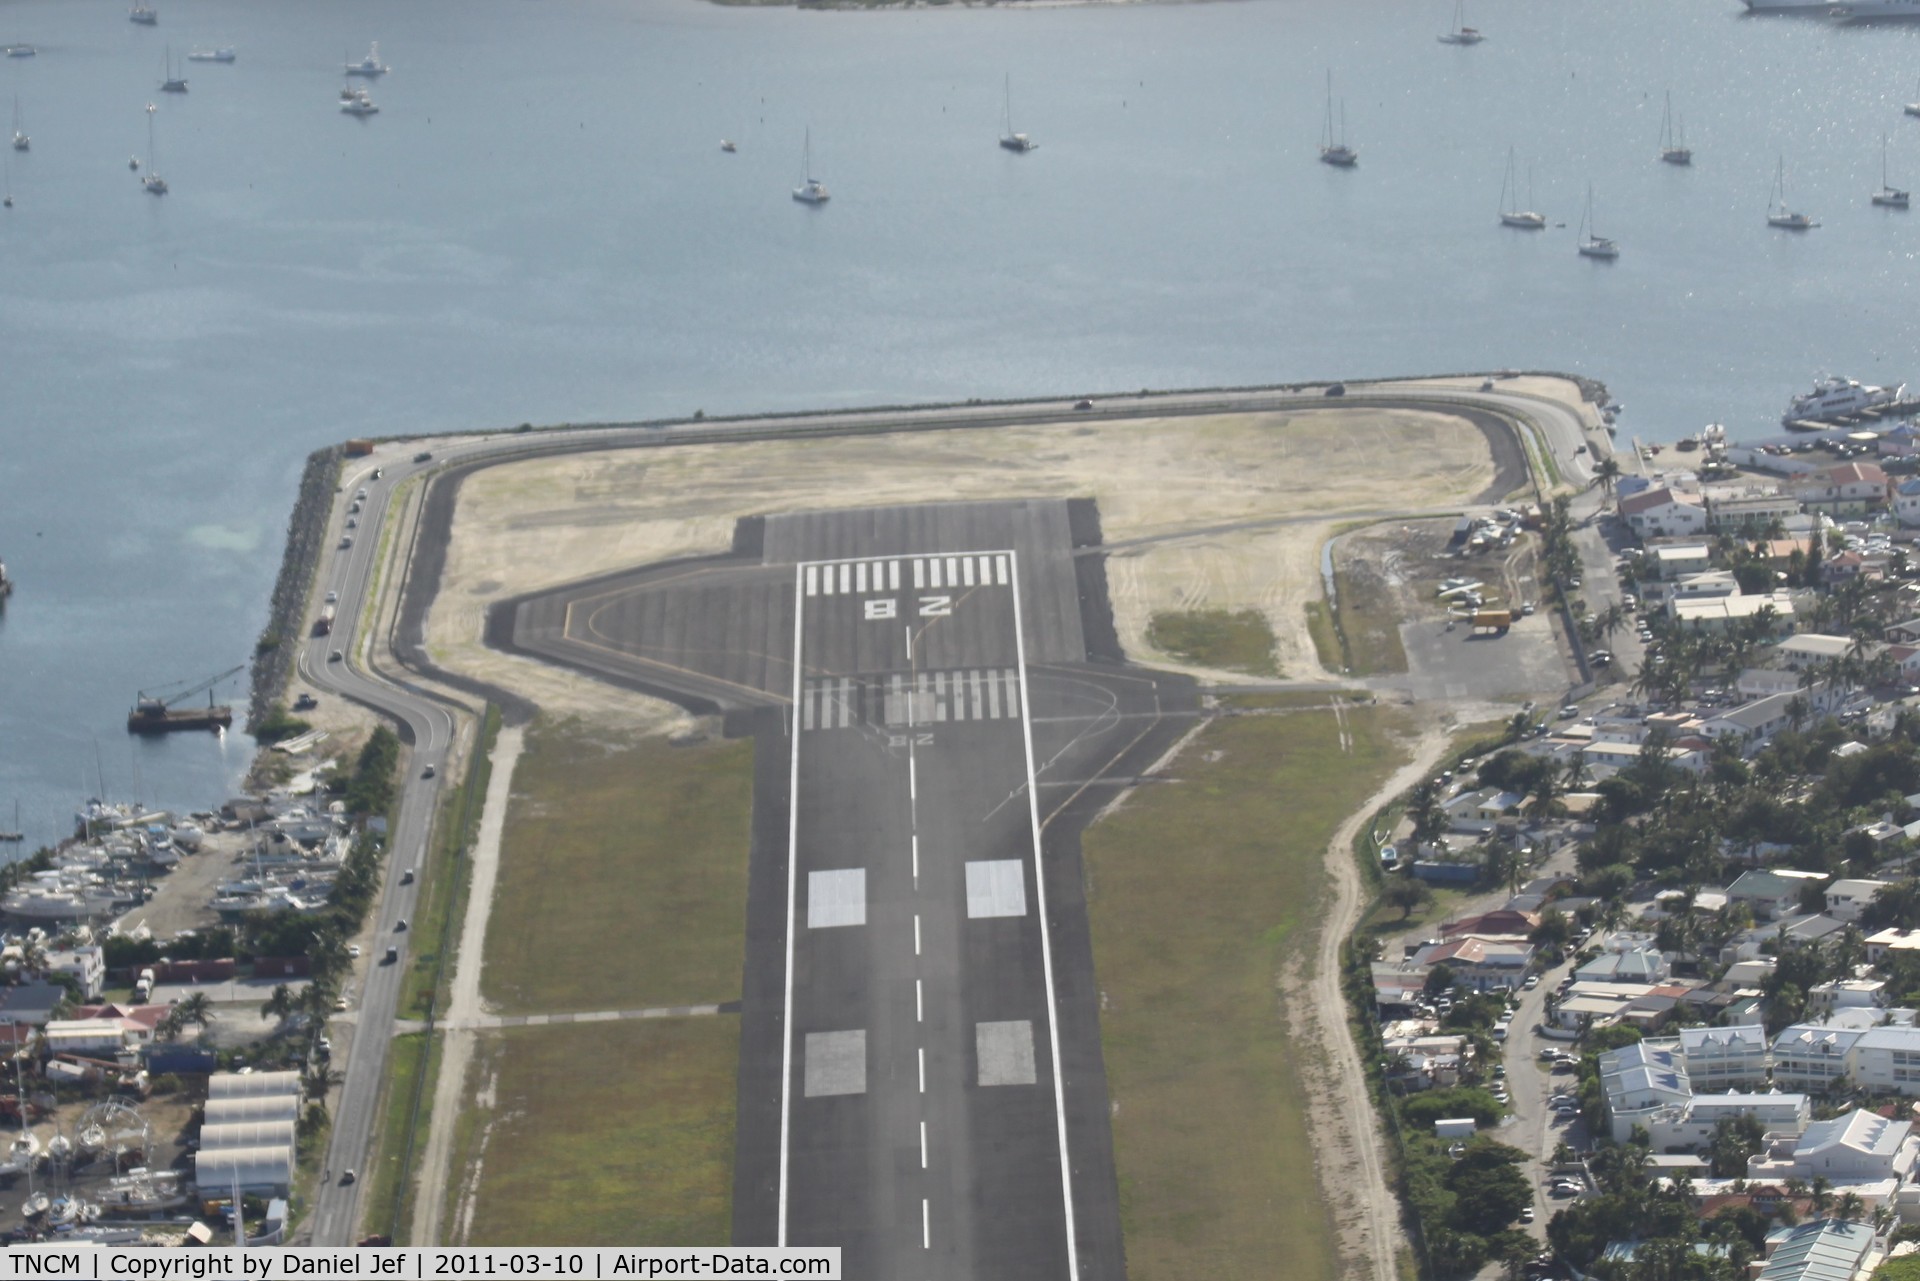 Princess Juliana International Airport, Philipsburg, Sint Maarten Netherlands Antilles (TNCM) - Extention at TNCM off runway 28